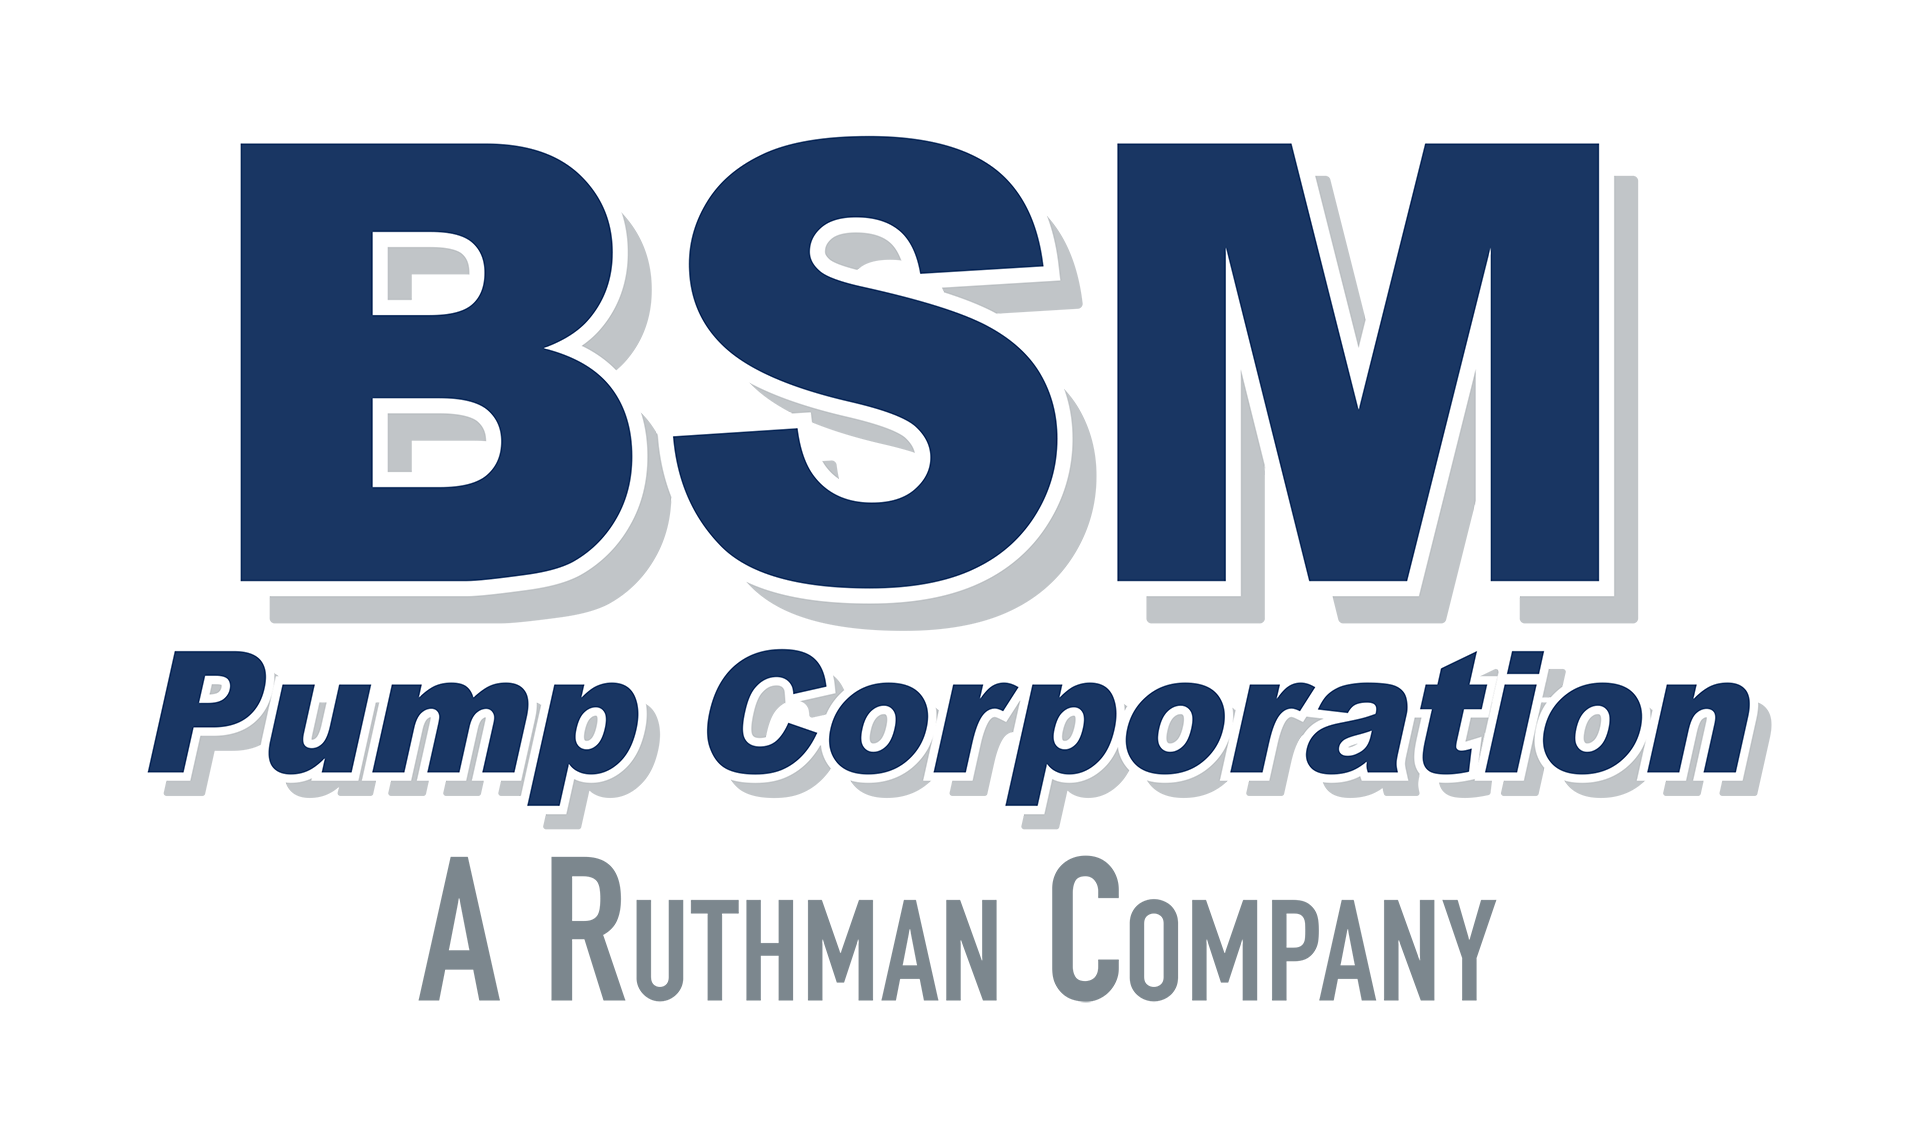 BSM Pump Corporation